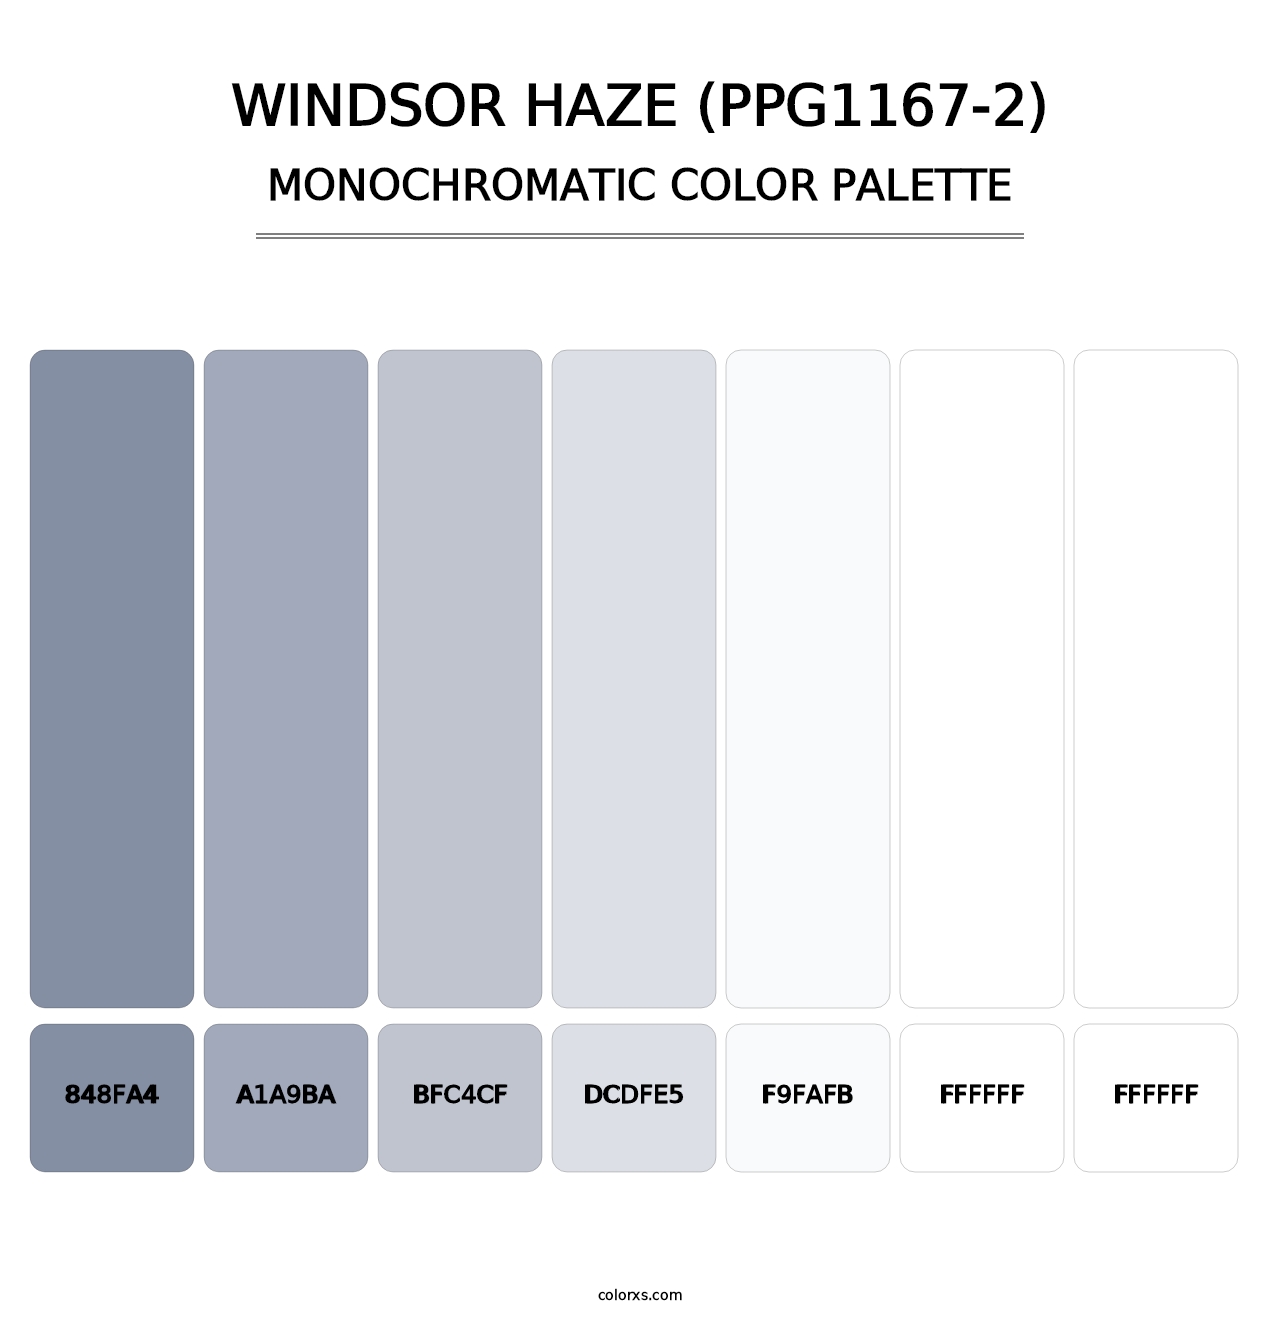 Windsor Haze (PPG1167-2) - Monochromatic Color Palette